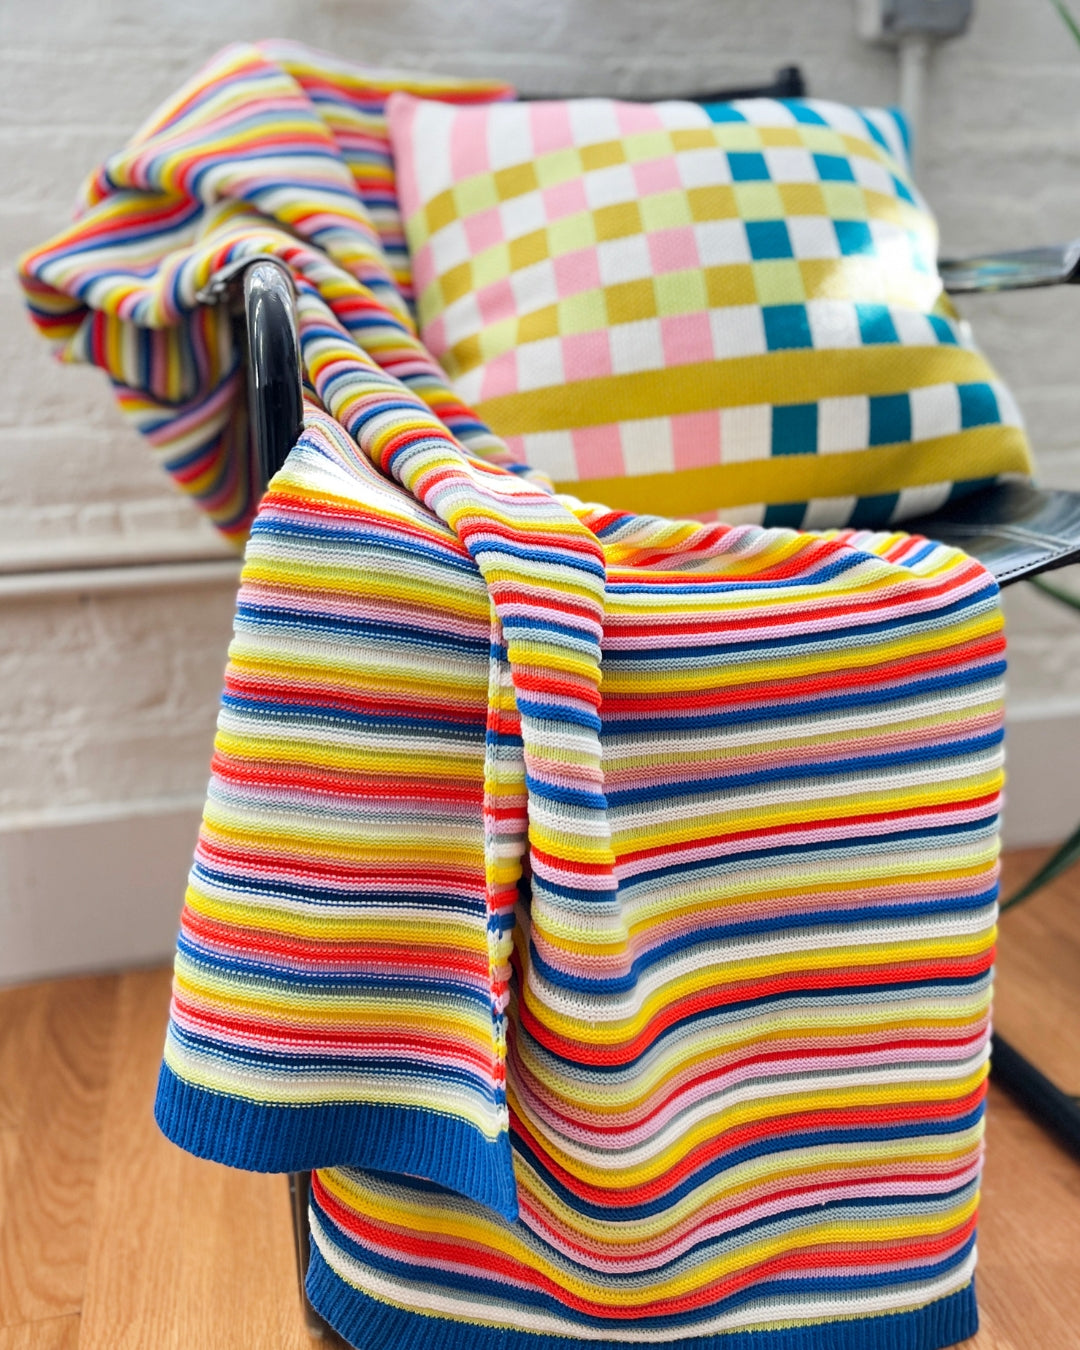 verloop colorful knit throws